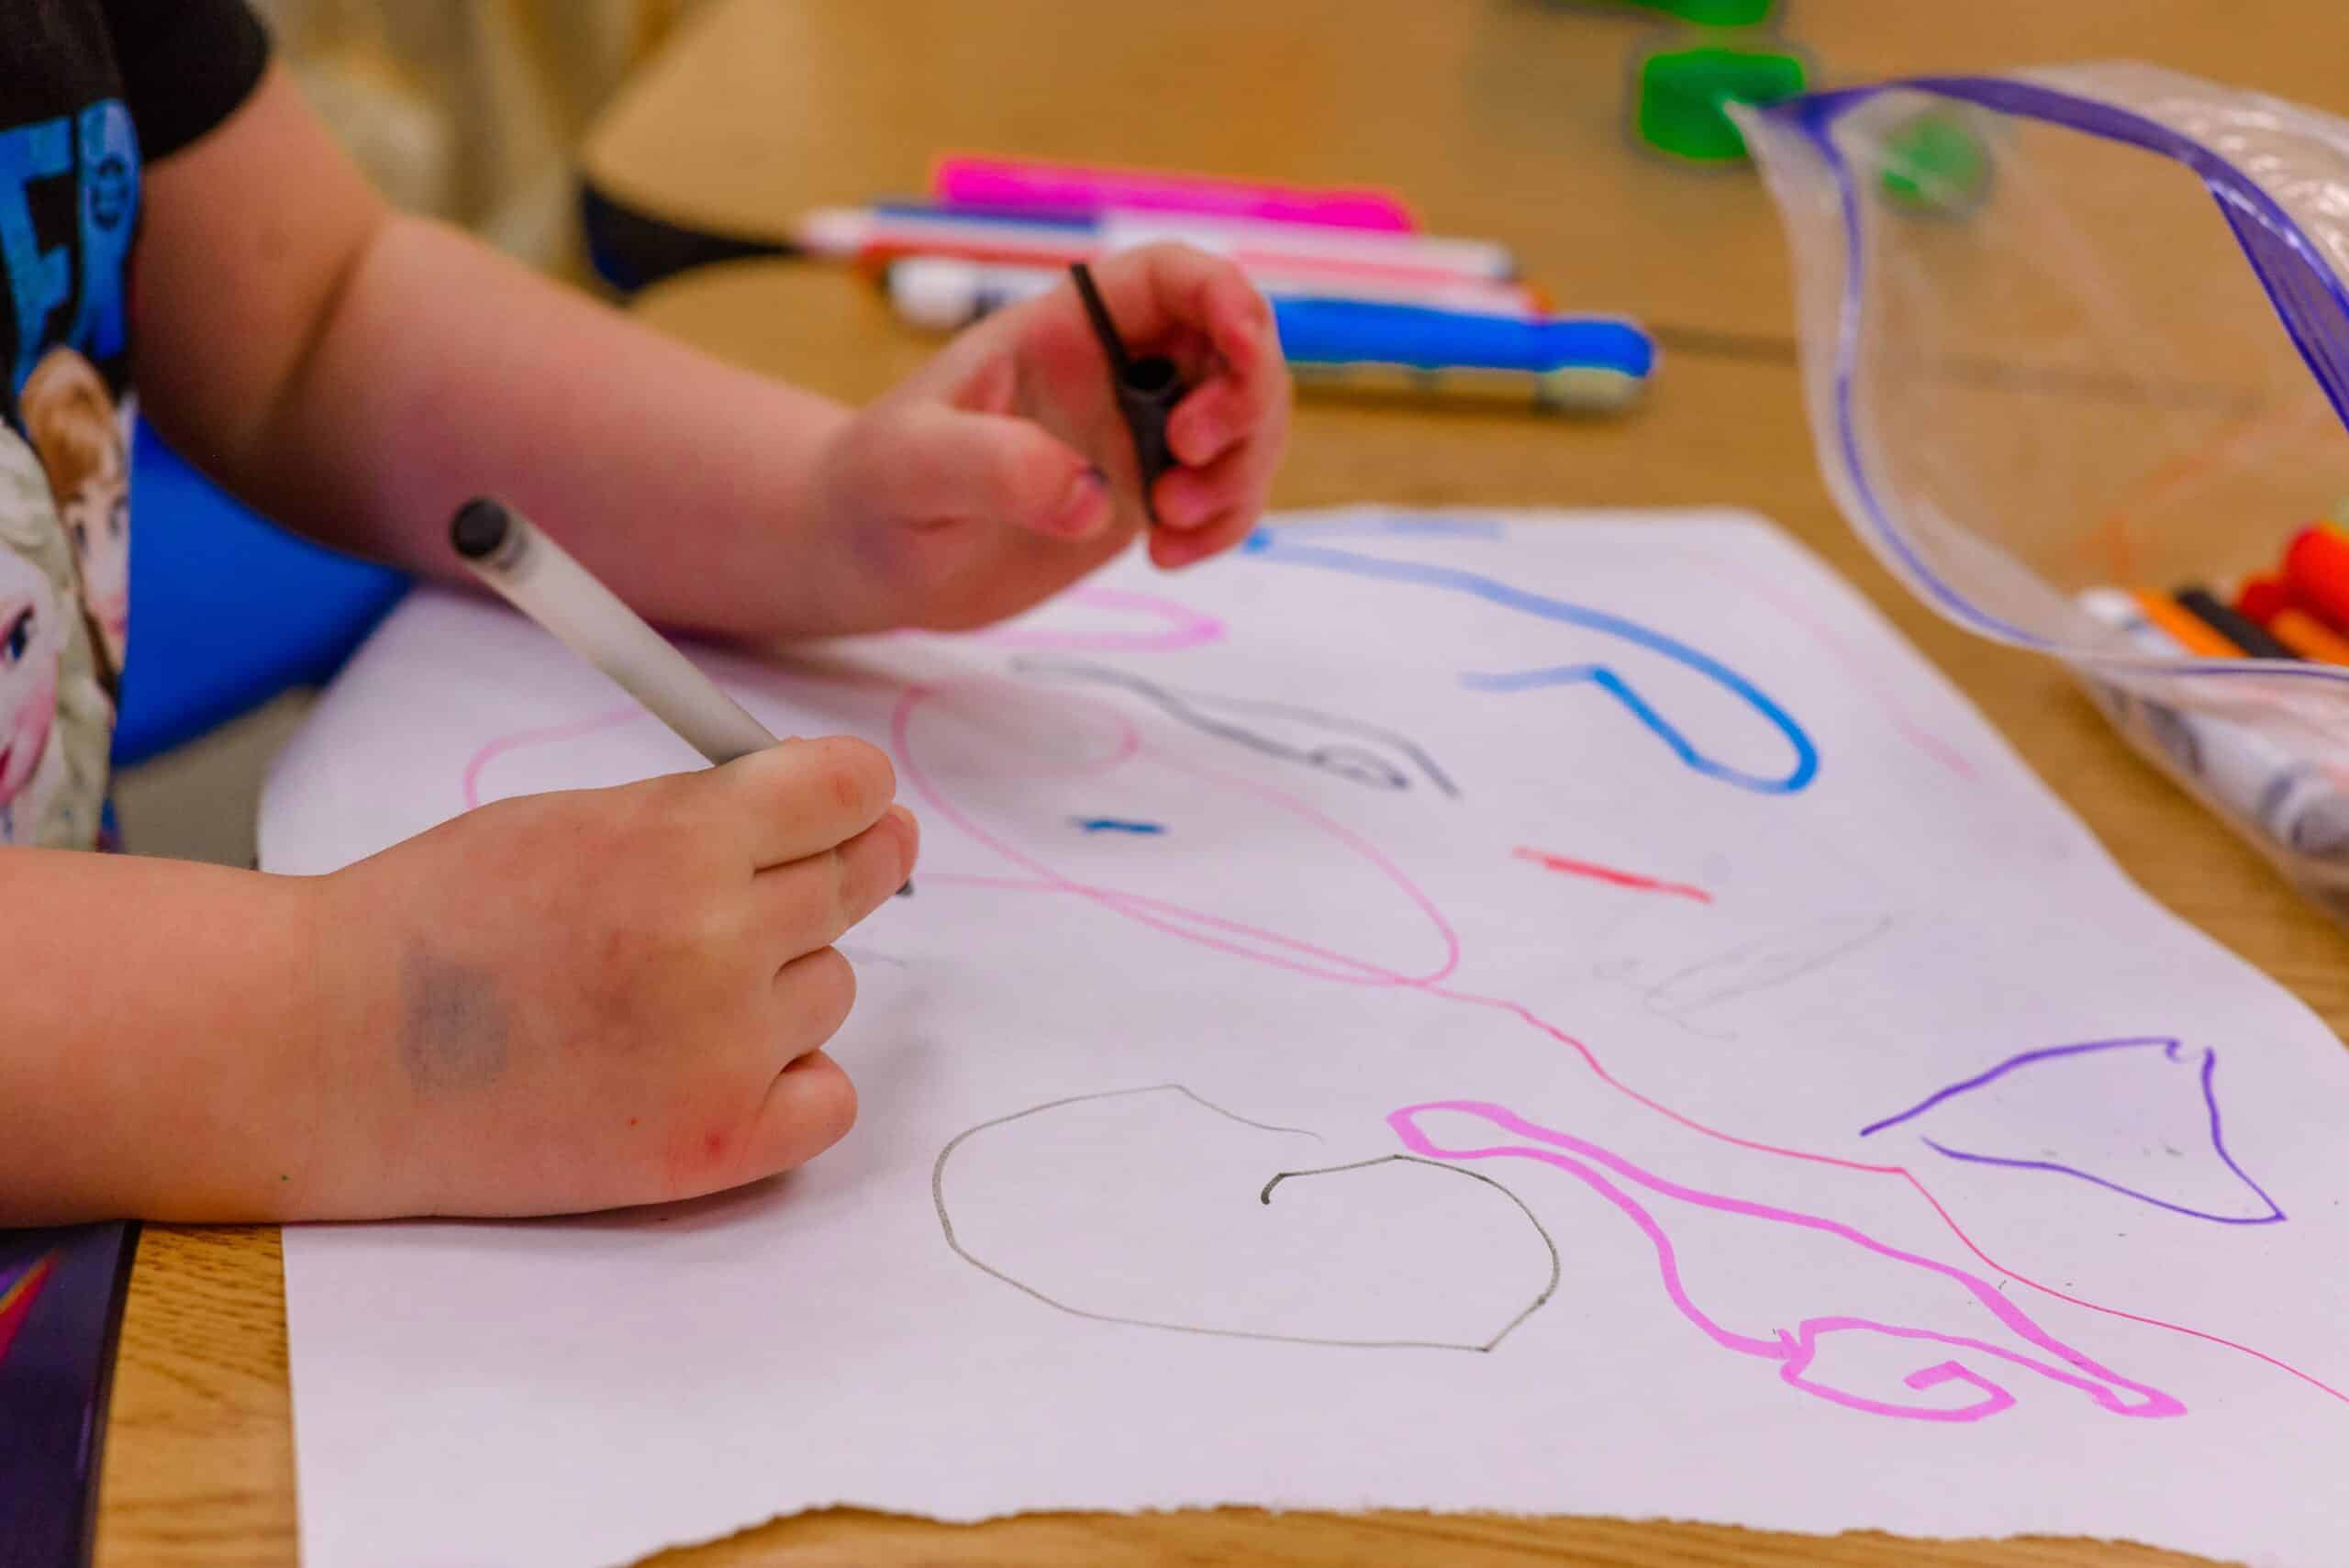 Barnehender som tegner på hvitt ark. Hendene har merker av farger.